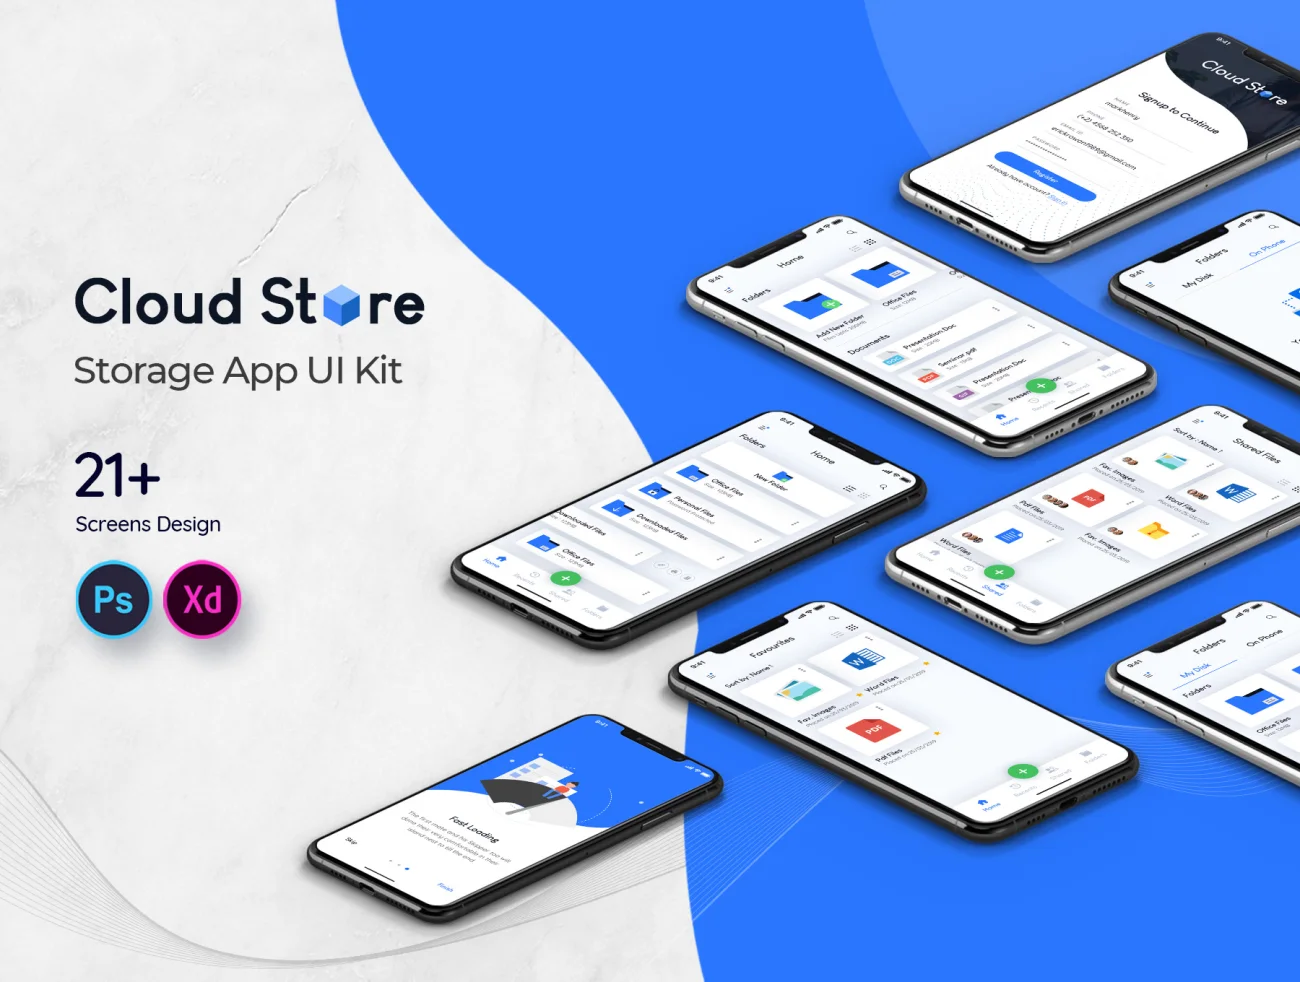 Cloud Store Mobile App UI Kit  简洁大气云端文件存储云盘UI应用程序套件-UI/UX、ui套件、主页、介绍、列表、卡片式、应用、引导页、注册、登录页、着陆页、网站、表单、详情-到位啦UI